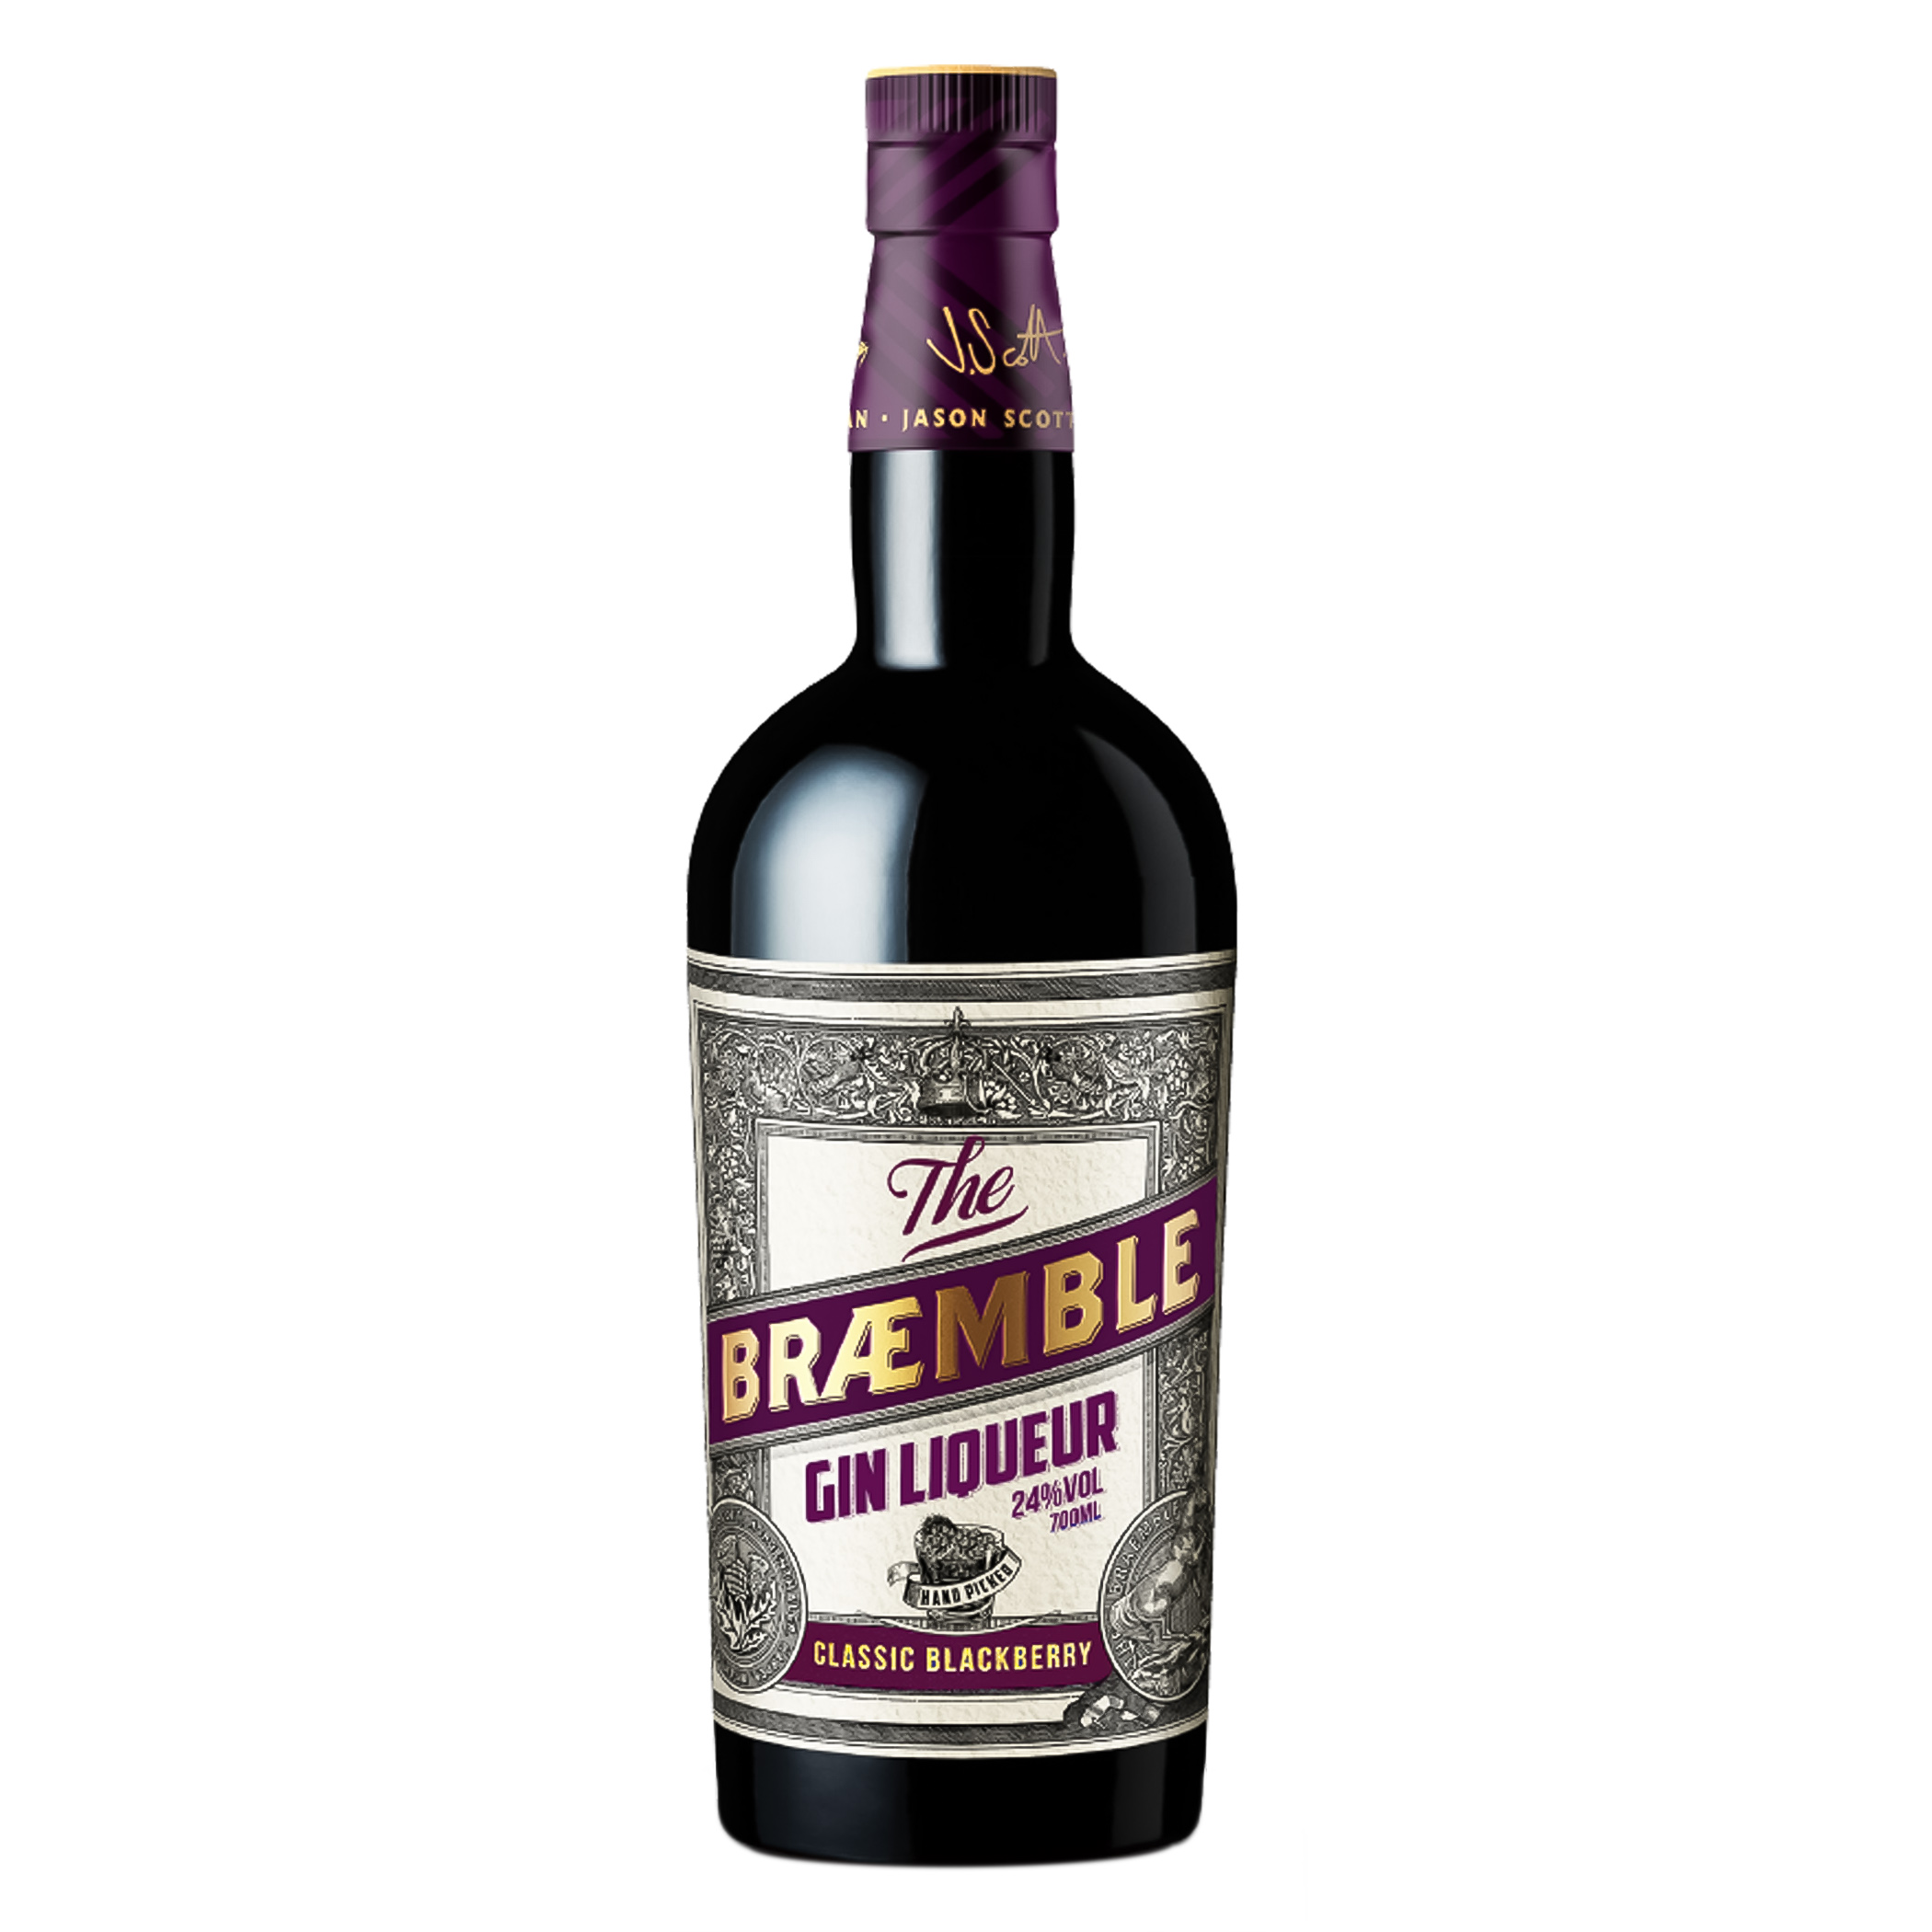 Braemble Gin Liqueur